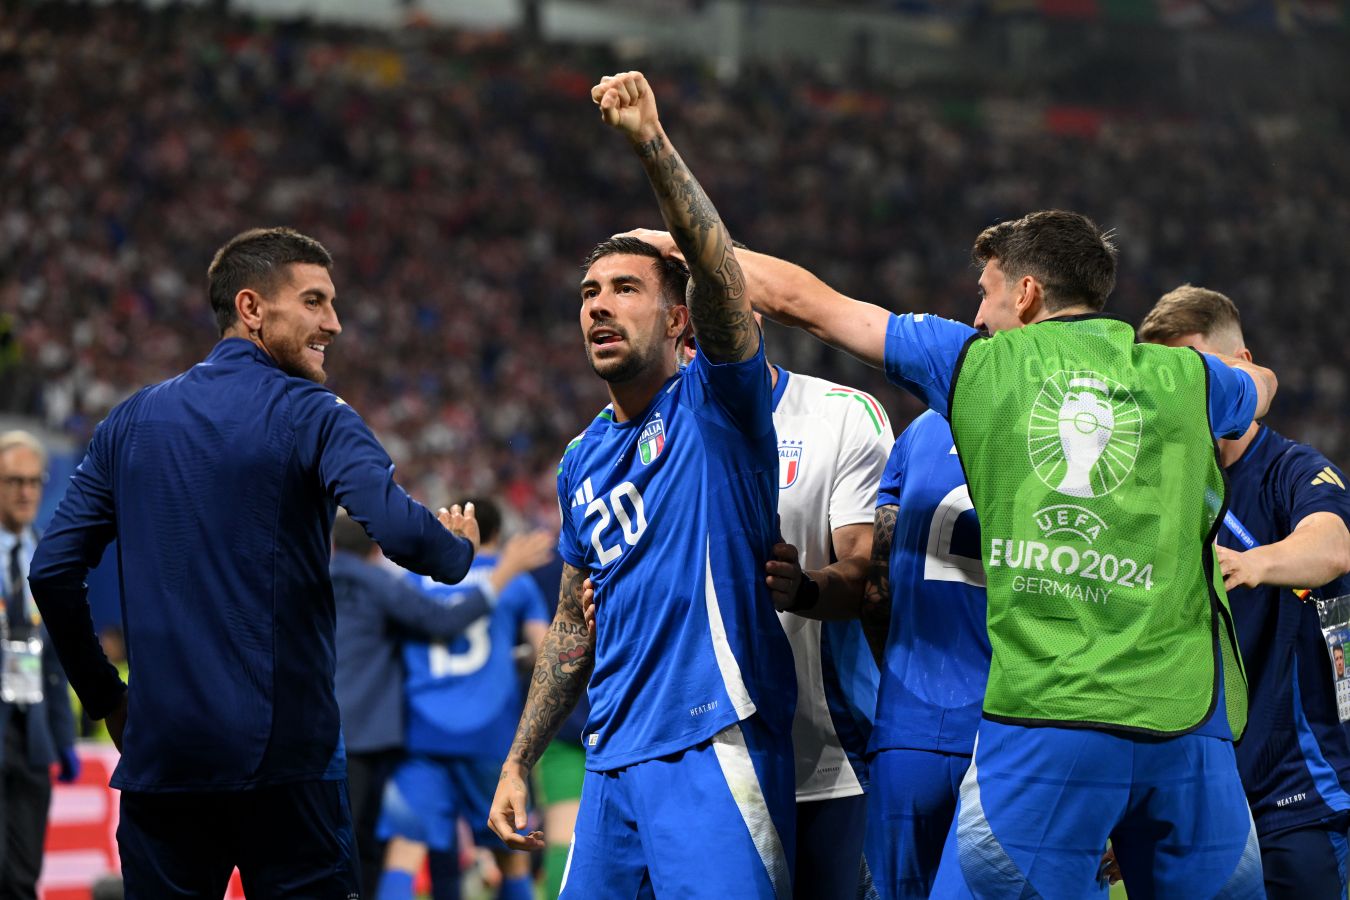 Агент Д’Амико: пока сборной Италии везёт на чемпионате Европы